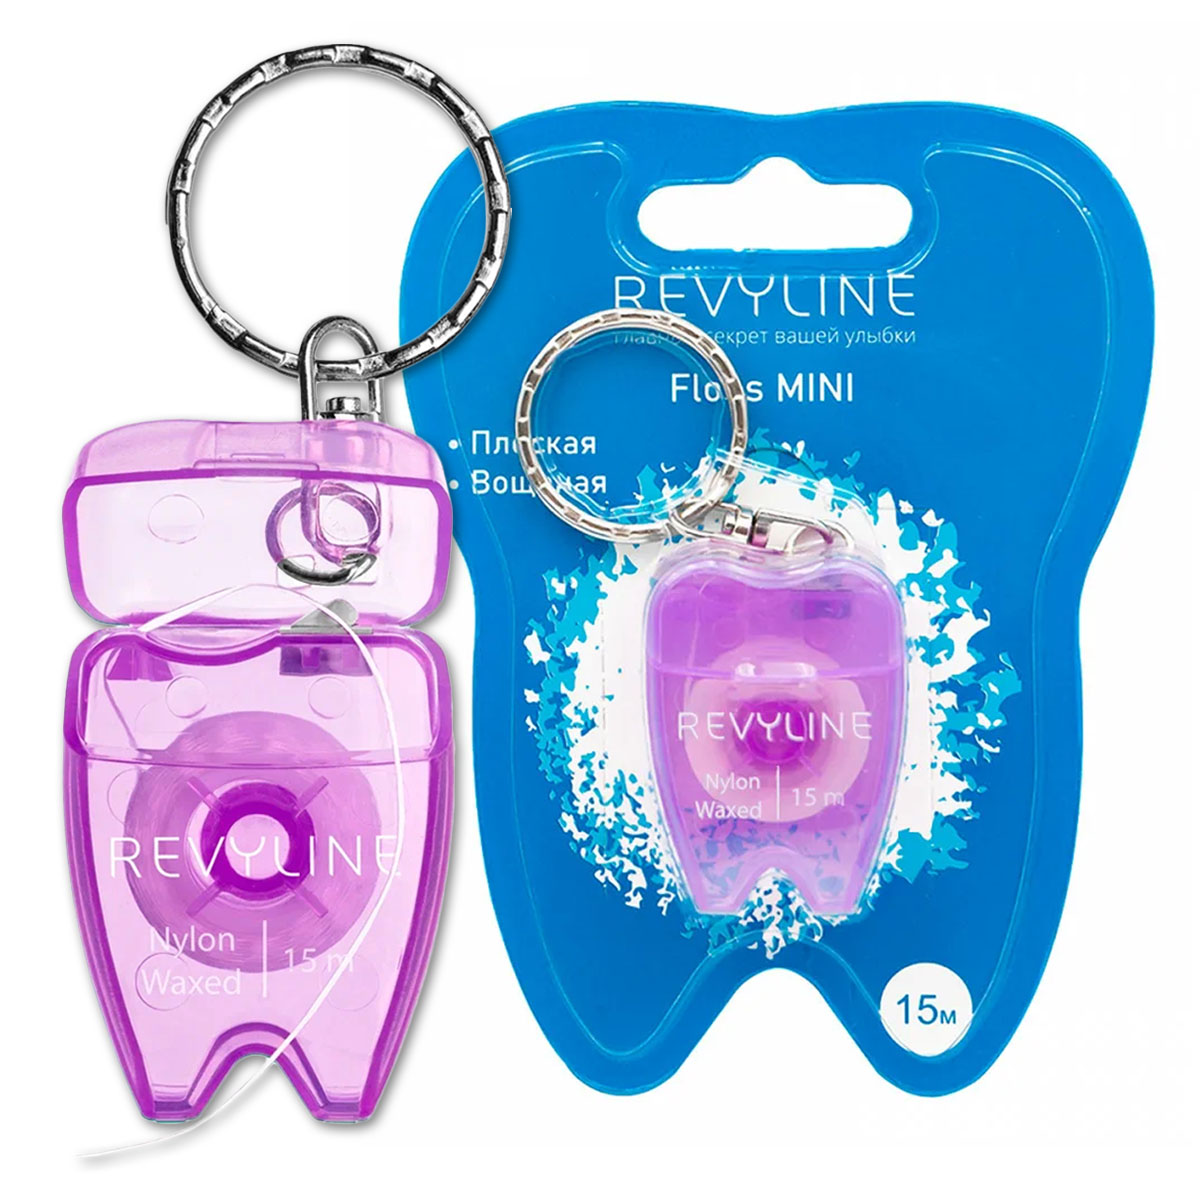 Зубная нить Revyline зубная нить revyline нейлон вощеная bubble gum 50 м